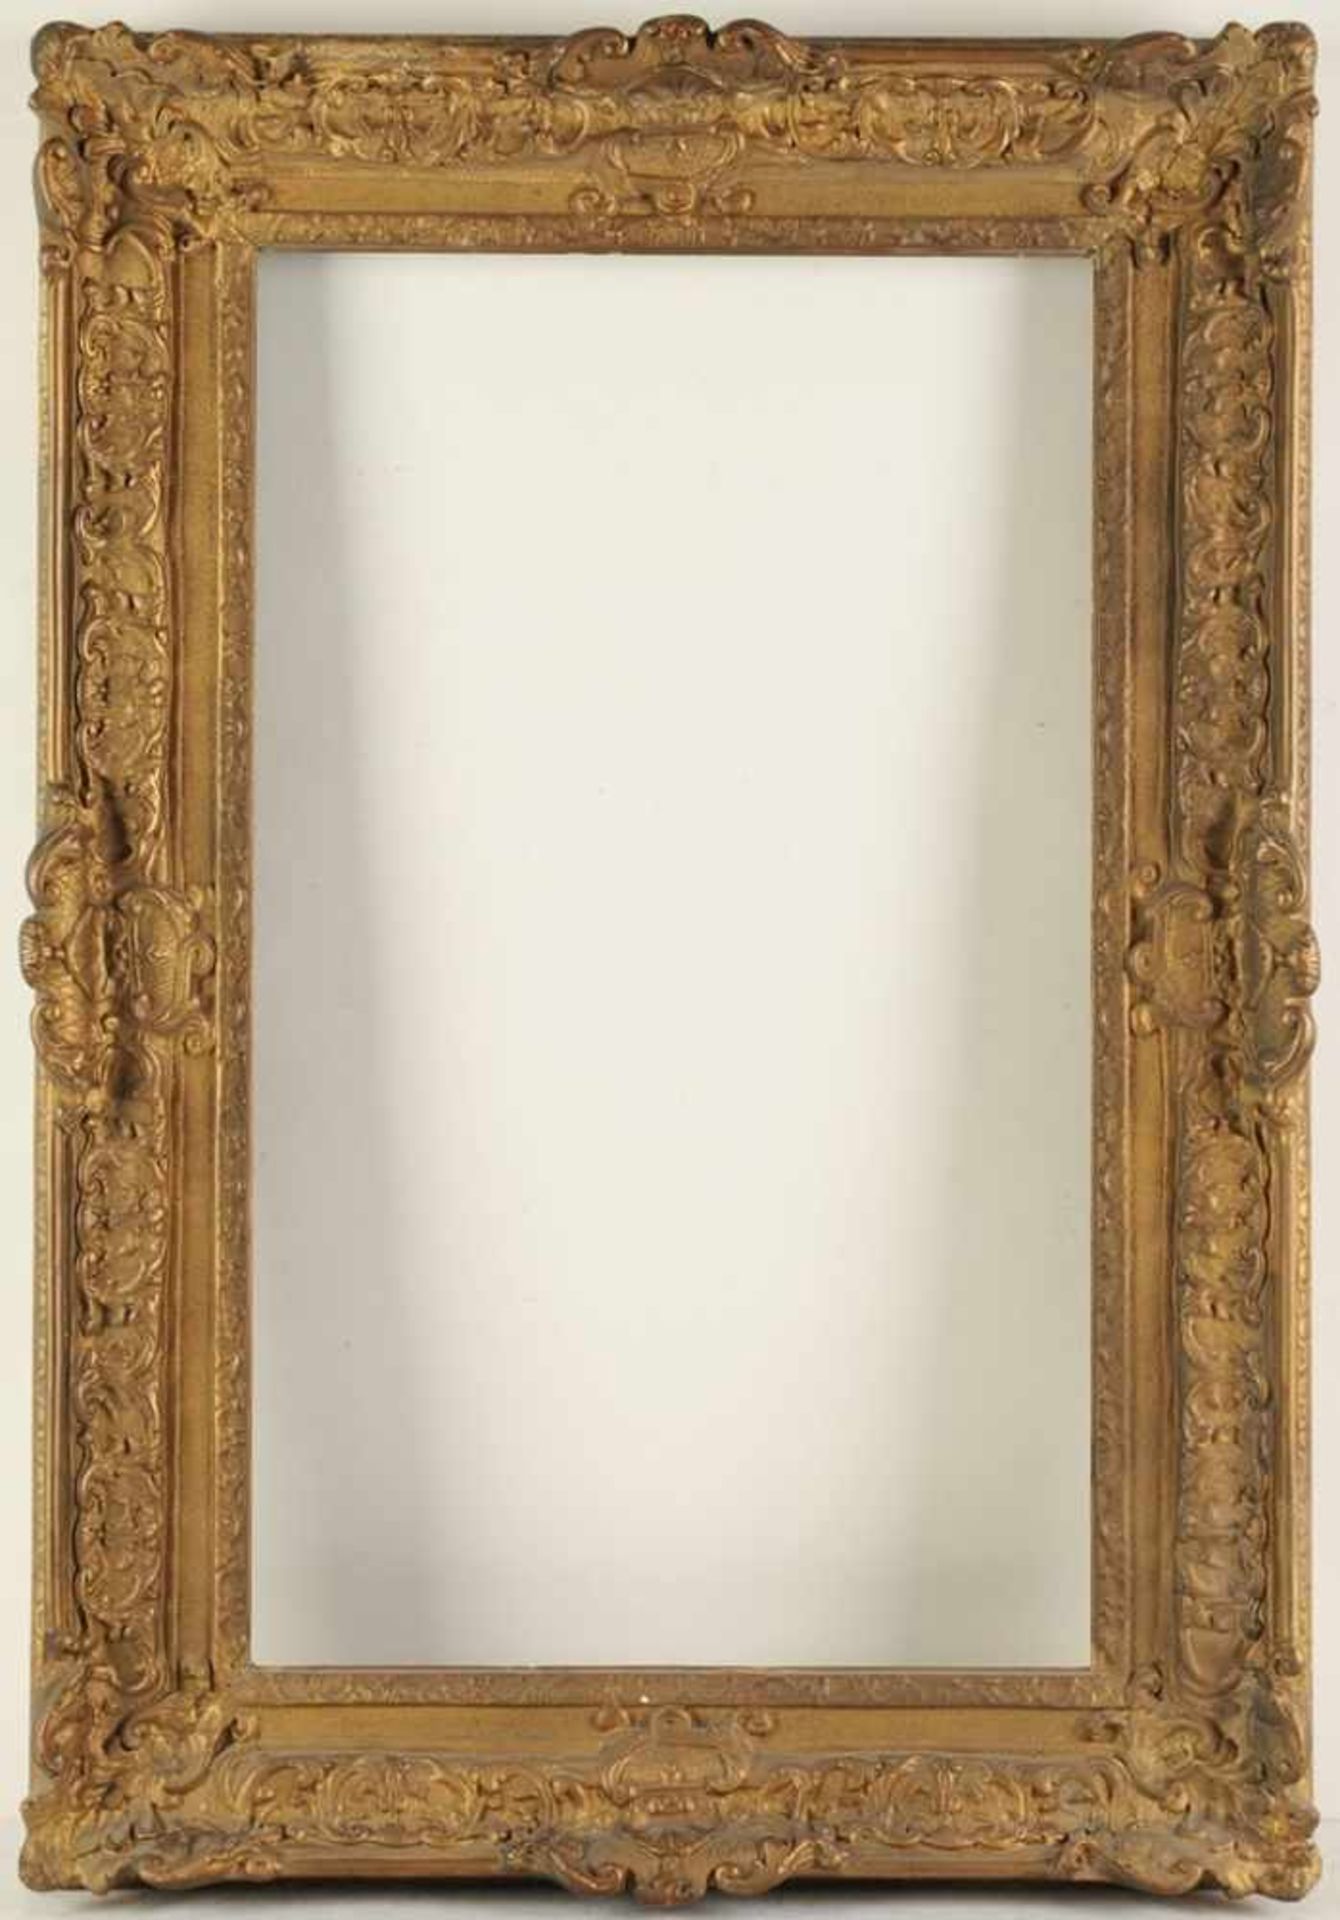 Rahmen in Régence-StilProfilierte Holzleisten, stuckiert u. golden gefasst. Reicher Reliefdekor